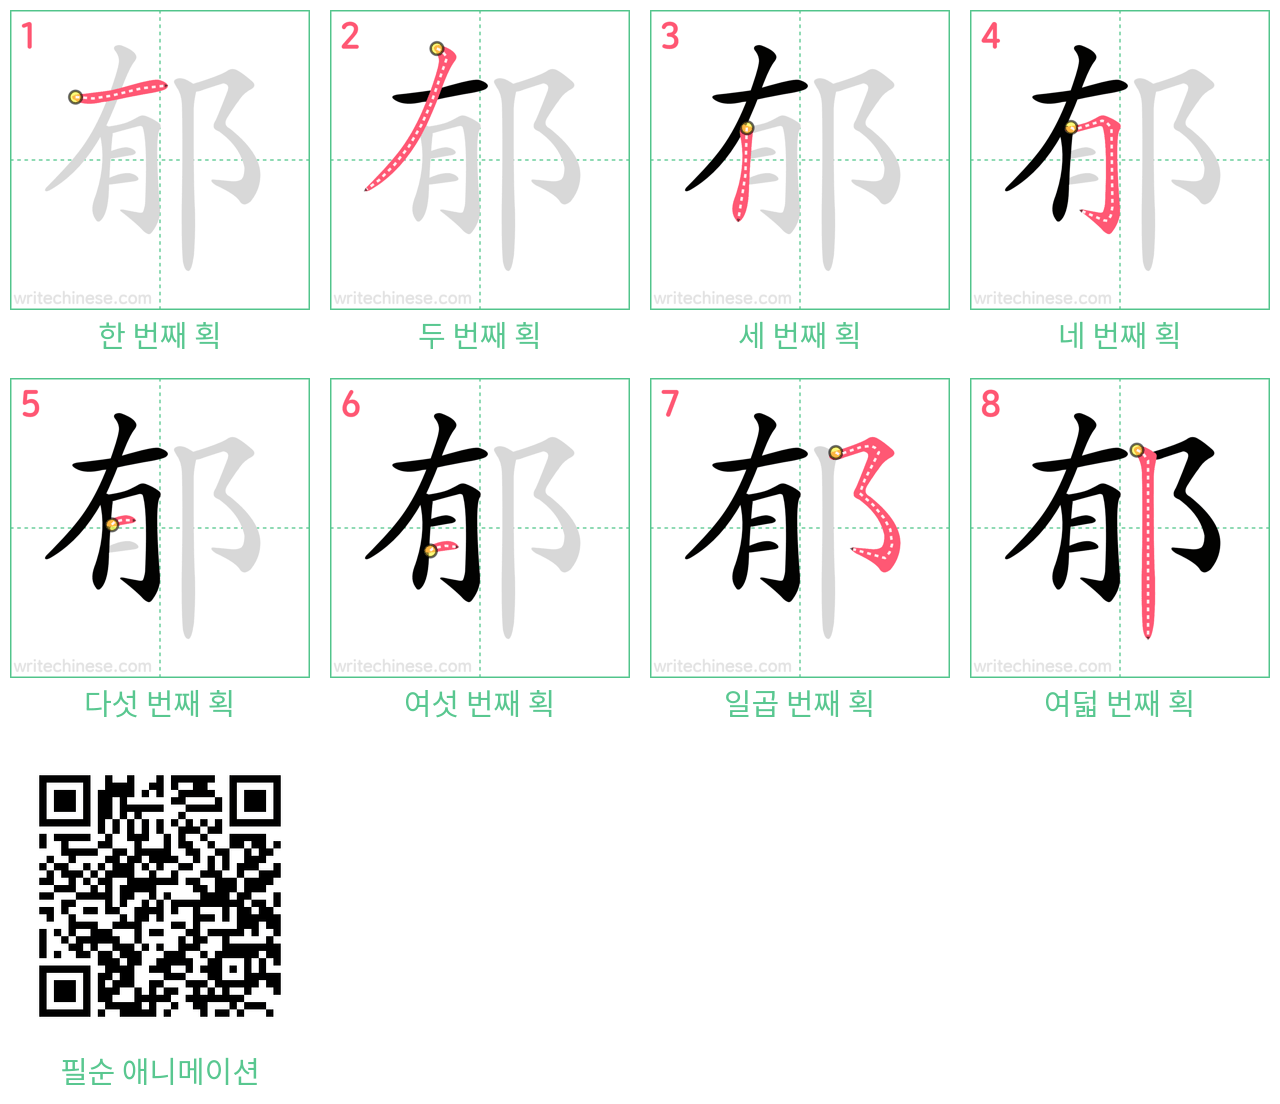 郁 step-by-step stroke order diagrams